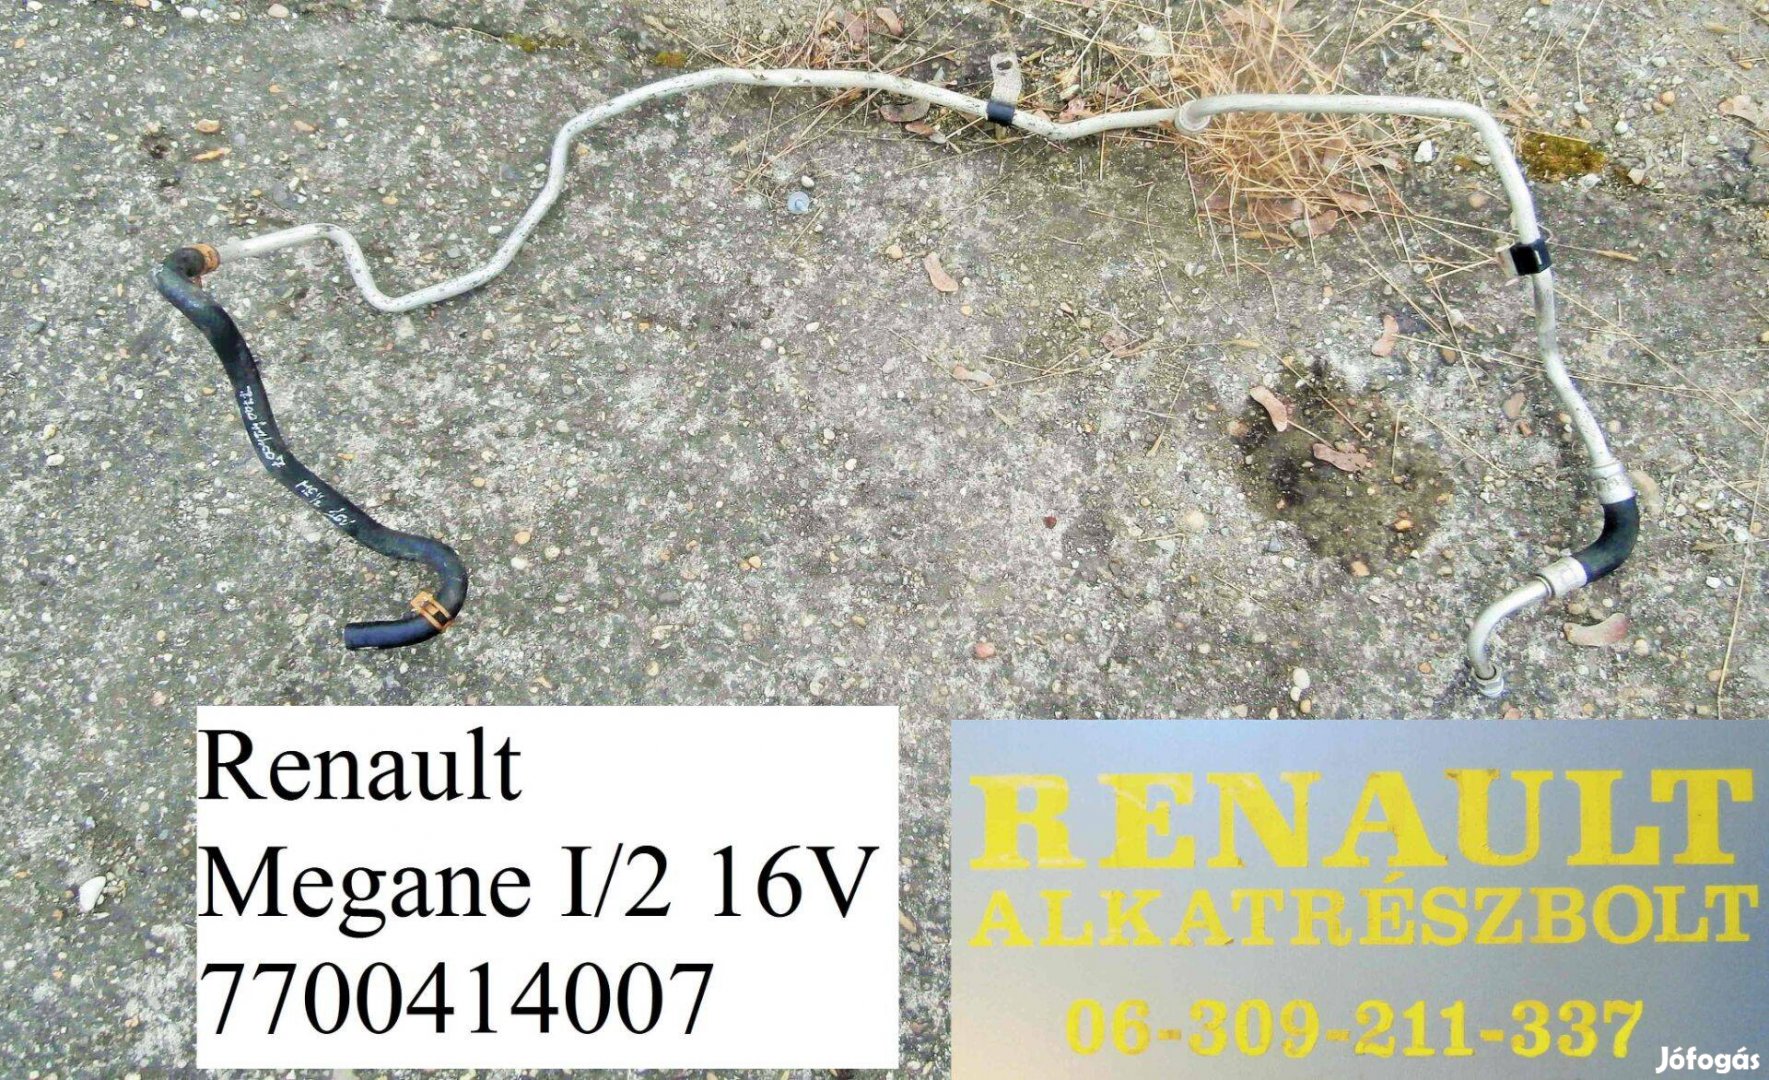 Renault Megane I/2 16V 7700414007